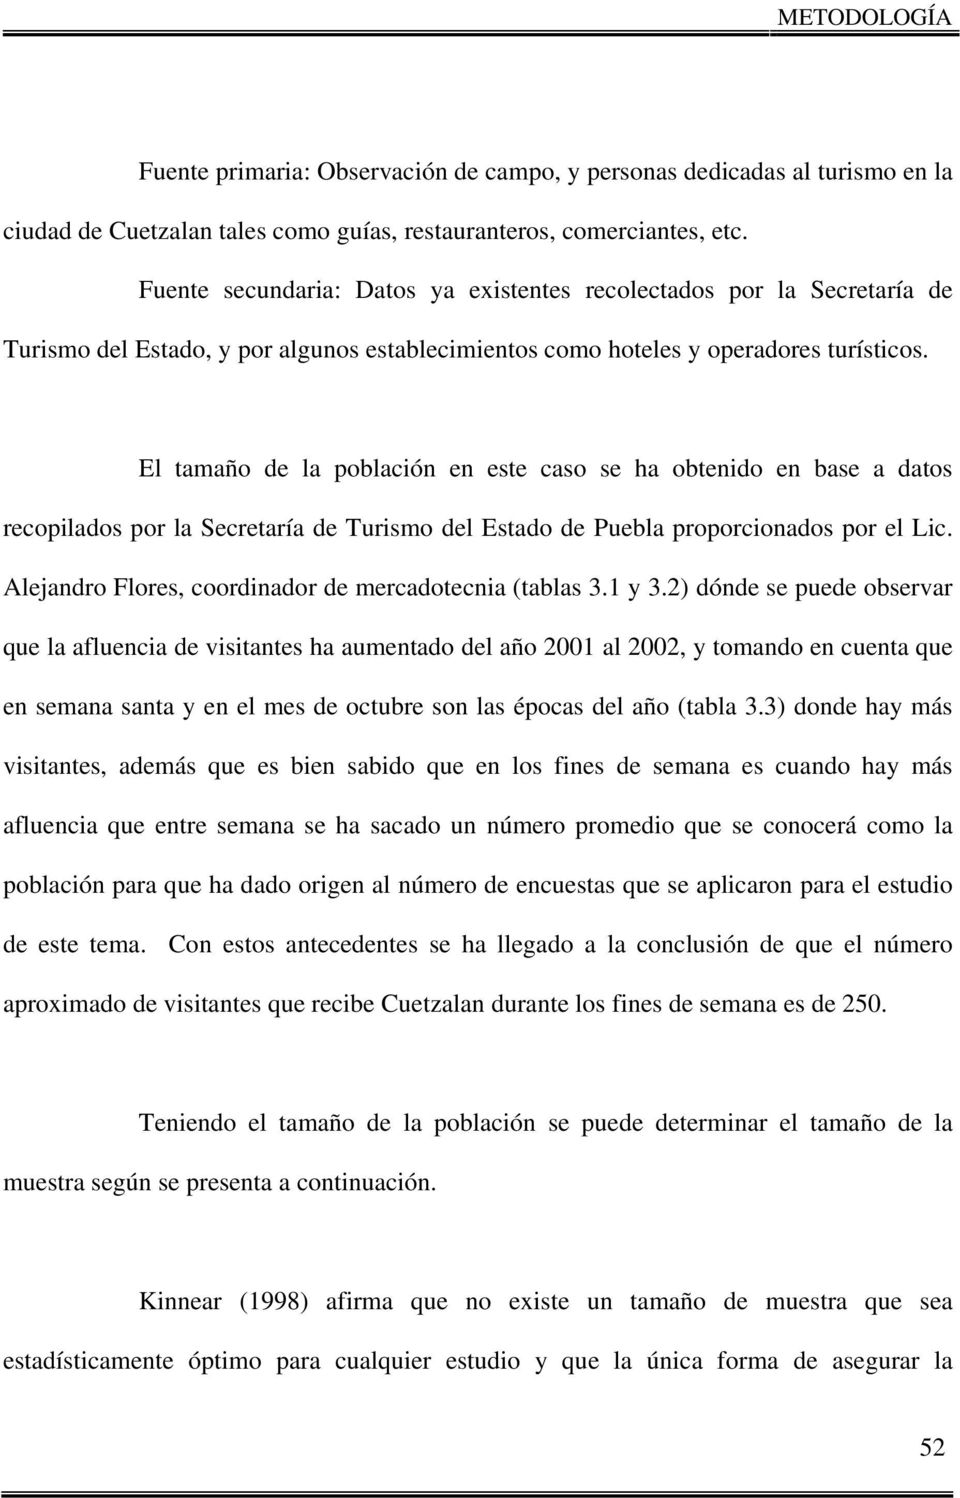 El tamaño de la población en este caso se ha obtenido en base a datos recopilados por la Secretaría de Turismo del Estado de Puebla proporcionados por el Lic.